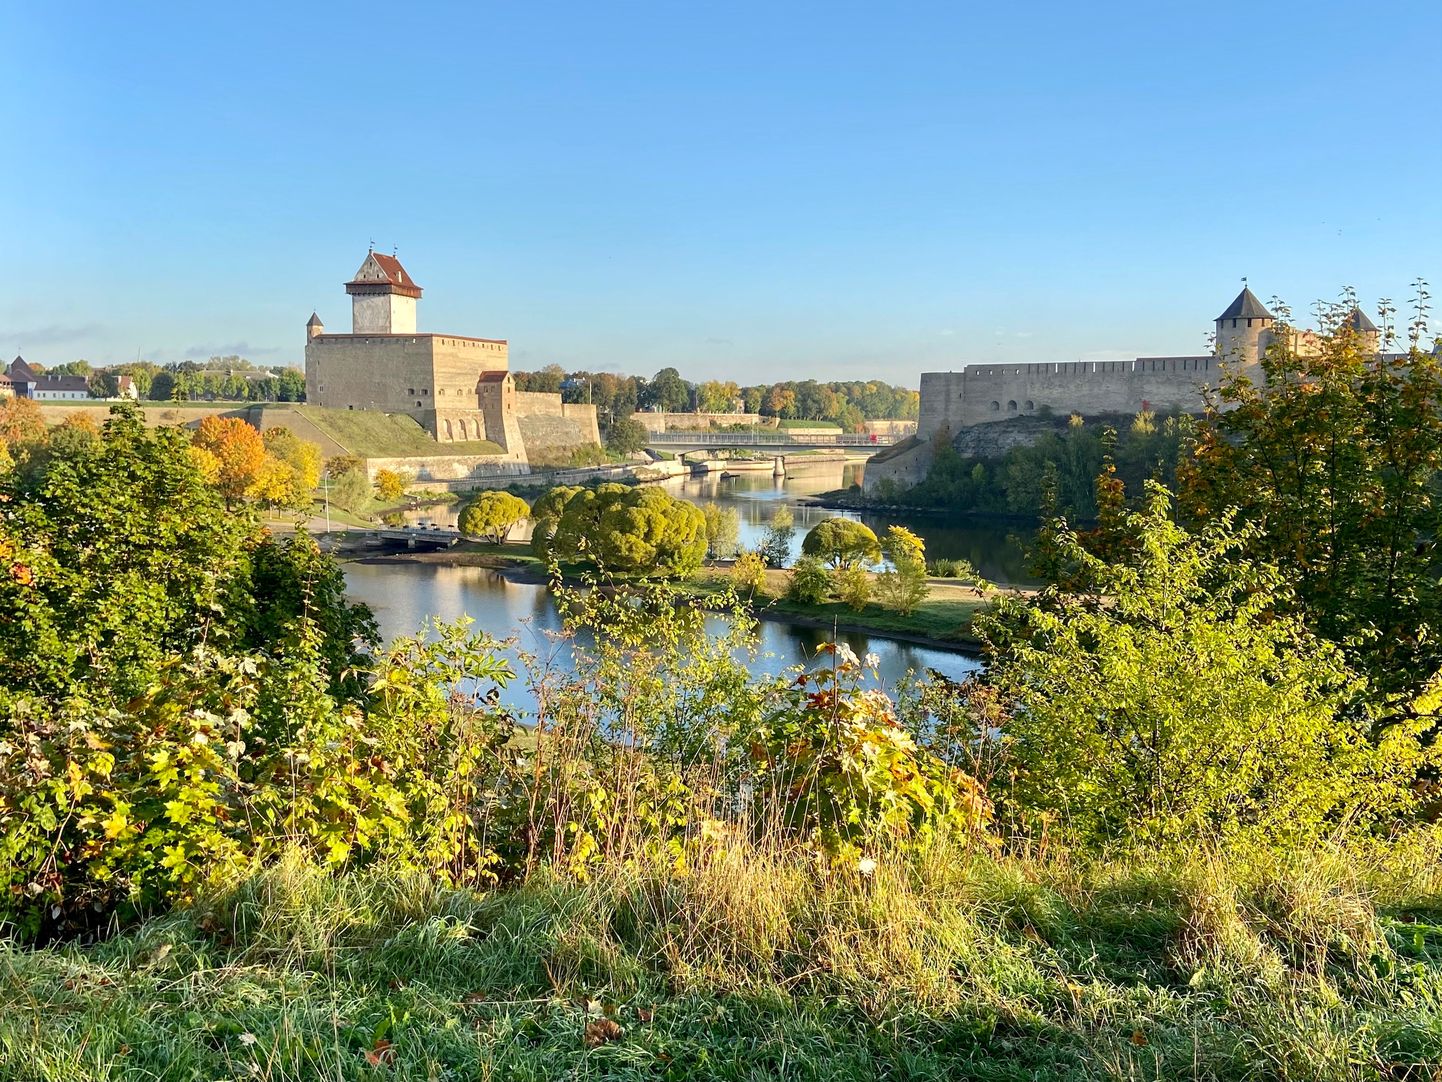 Võsastunud ja heakorrastamata vaateplatvorm, kust avaneb nn viie krooni vaade Narva jõele ja kahele piirilinnusele.